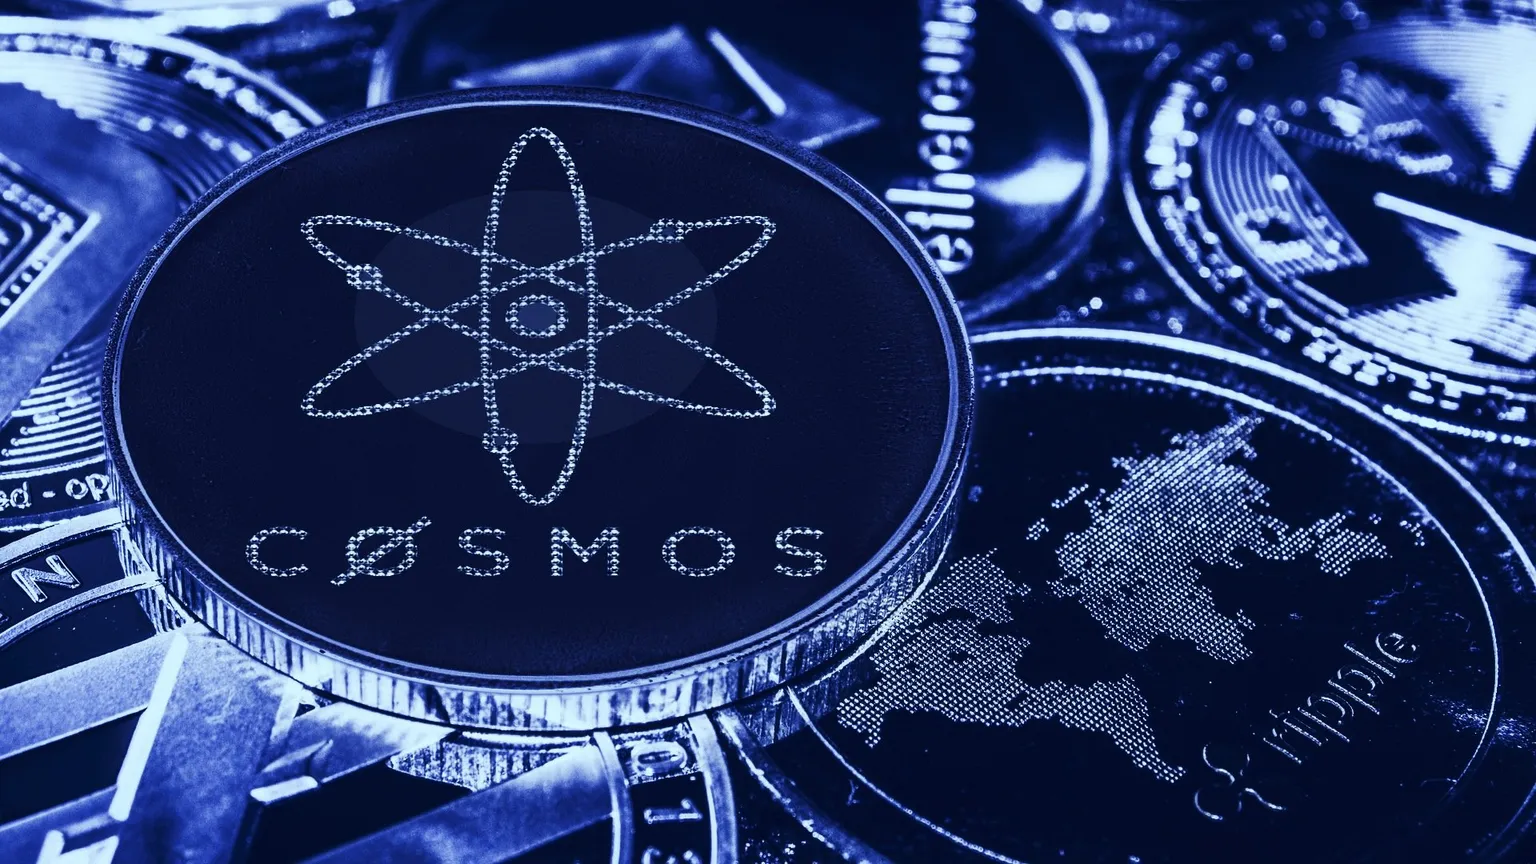 Cosmos (ATOM) Sube 12,5% Desafiando la Caída de los Mercados de Criptomonedas